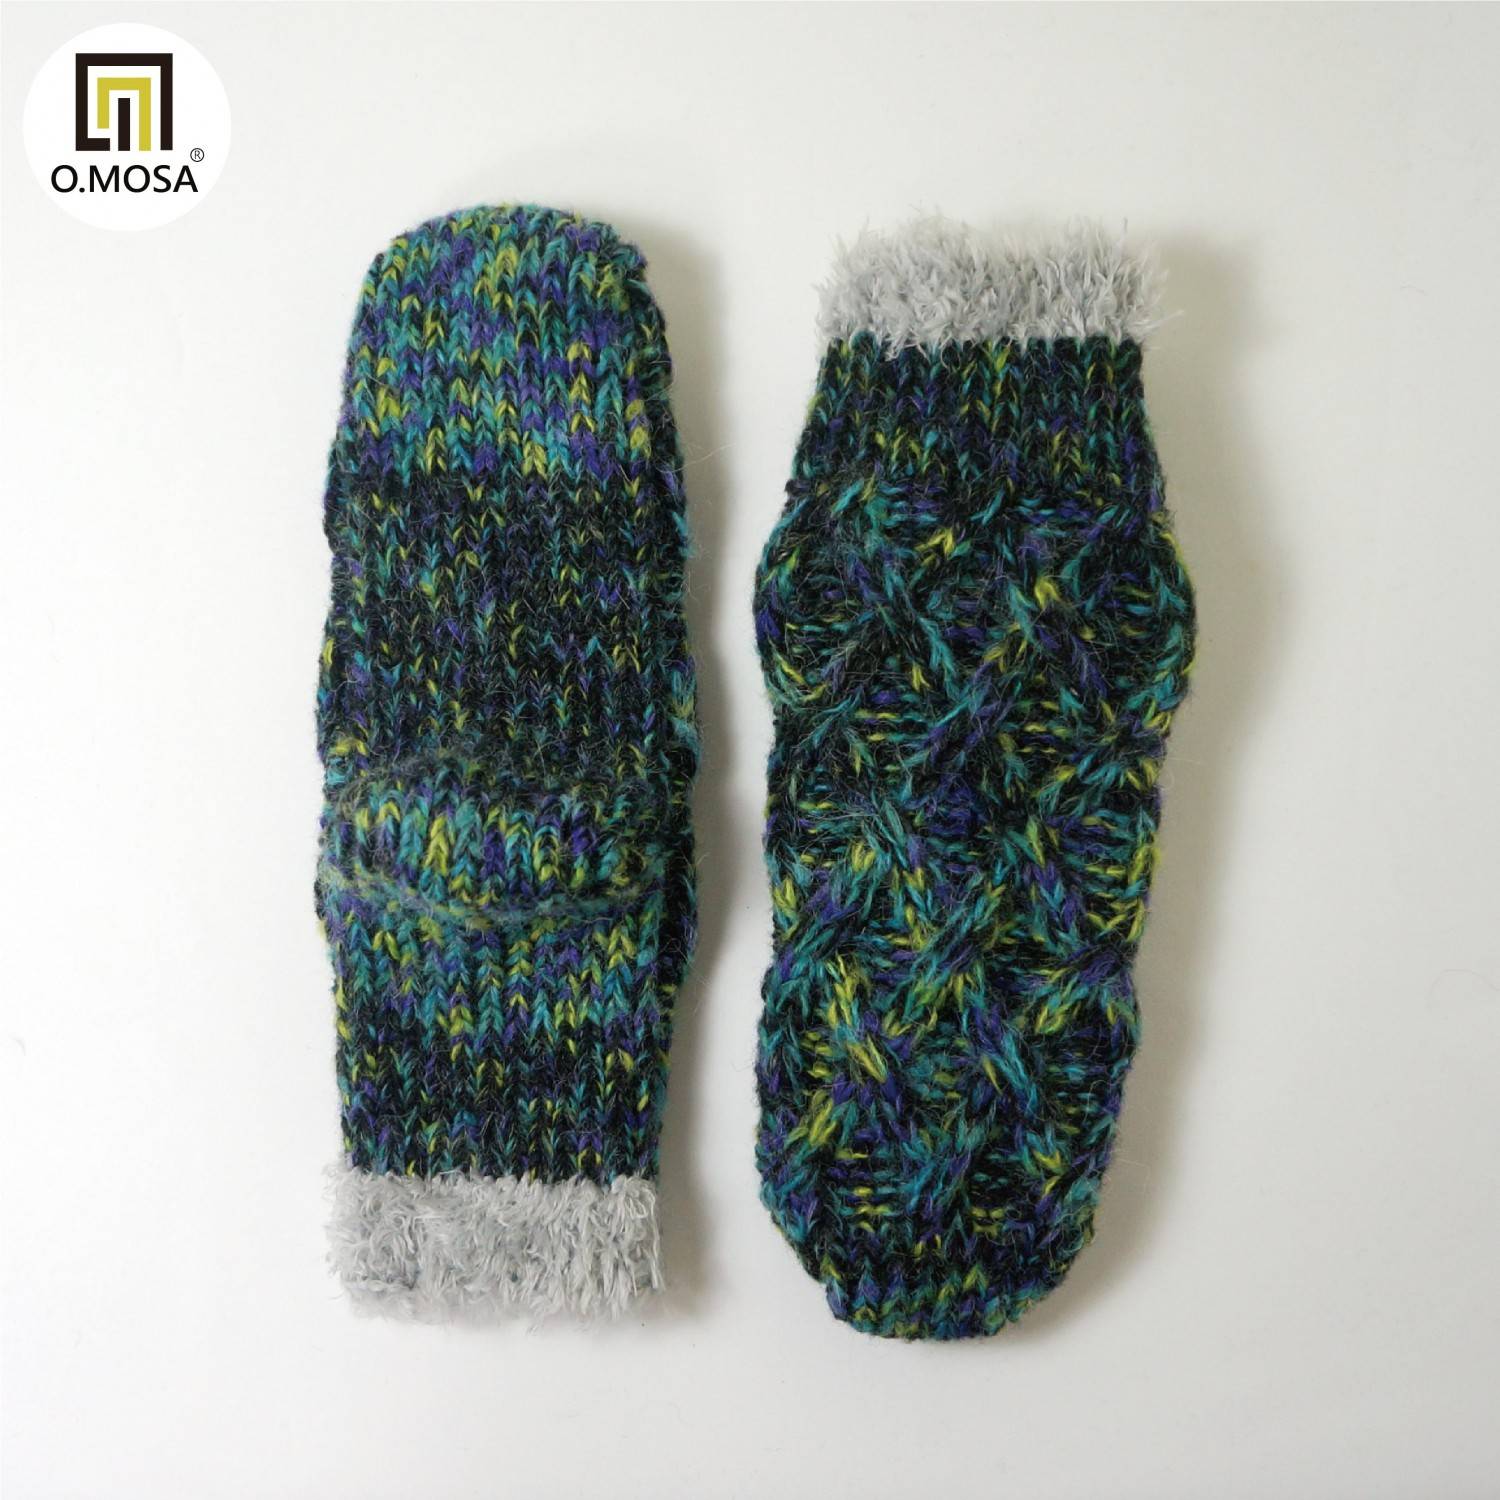 O.MOSA 秘魯羊駝毛多彩雙用居家可機洗快乾室內發熱襪禮品襪(寶石綠)